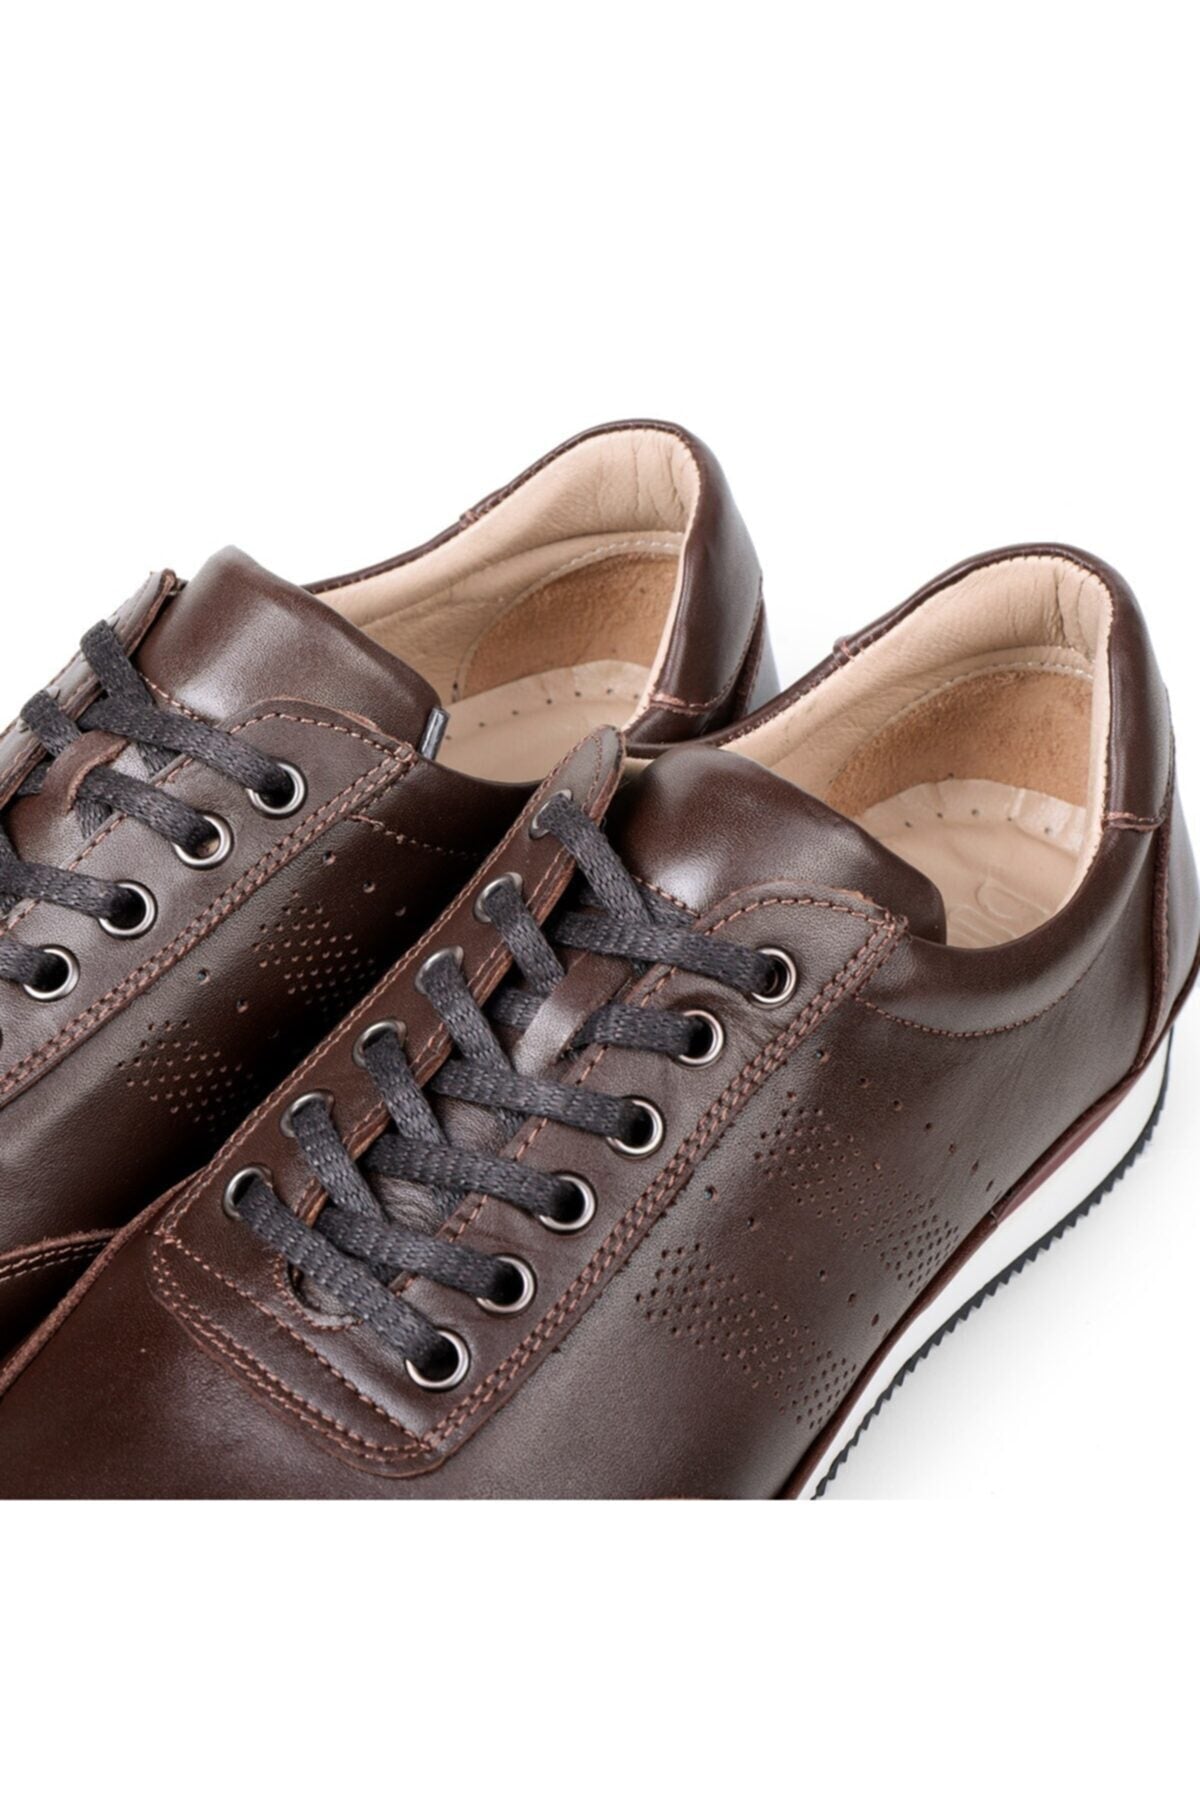  Мужская повседневная обувь Fagola из натуральной кожи, Повседневная обувь, 100% кожаная обувь, 4 сезона